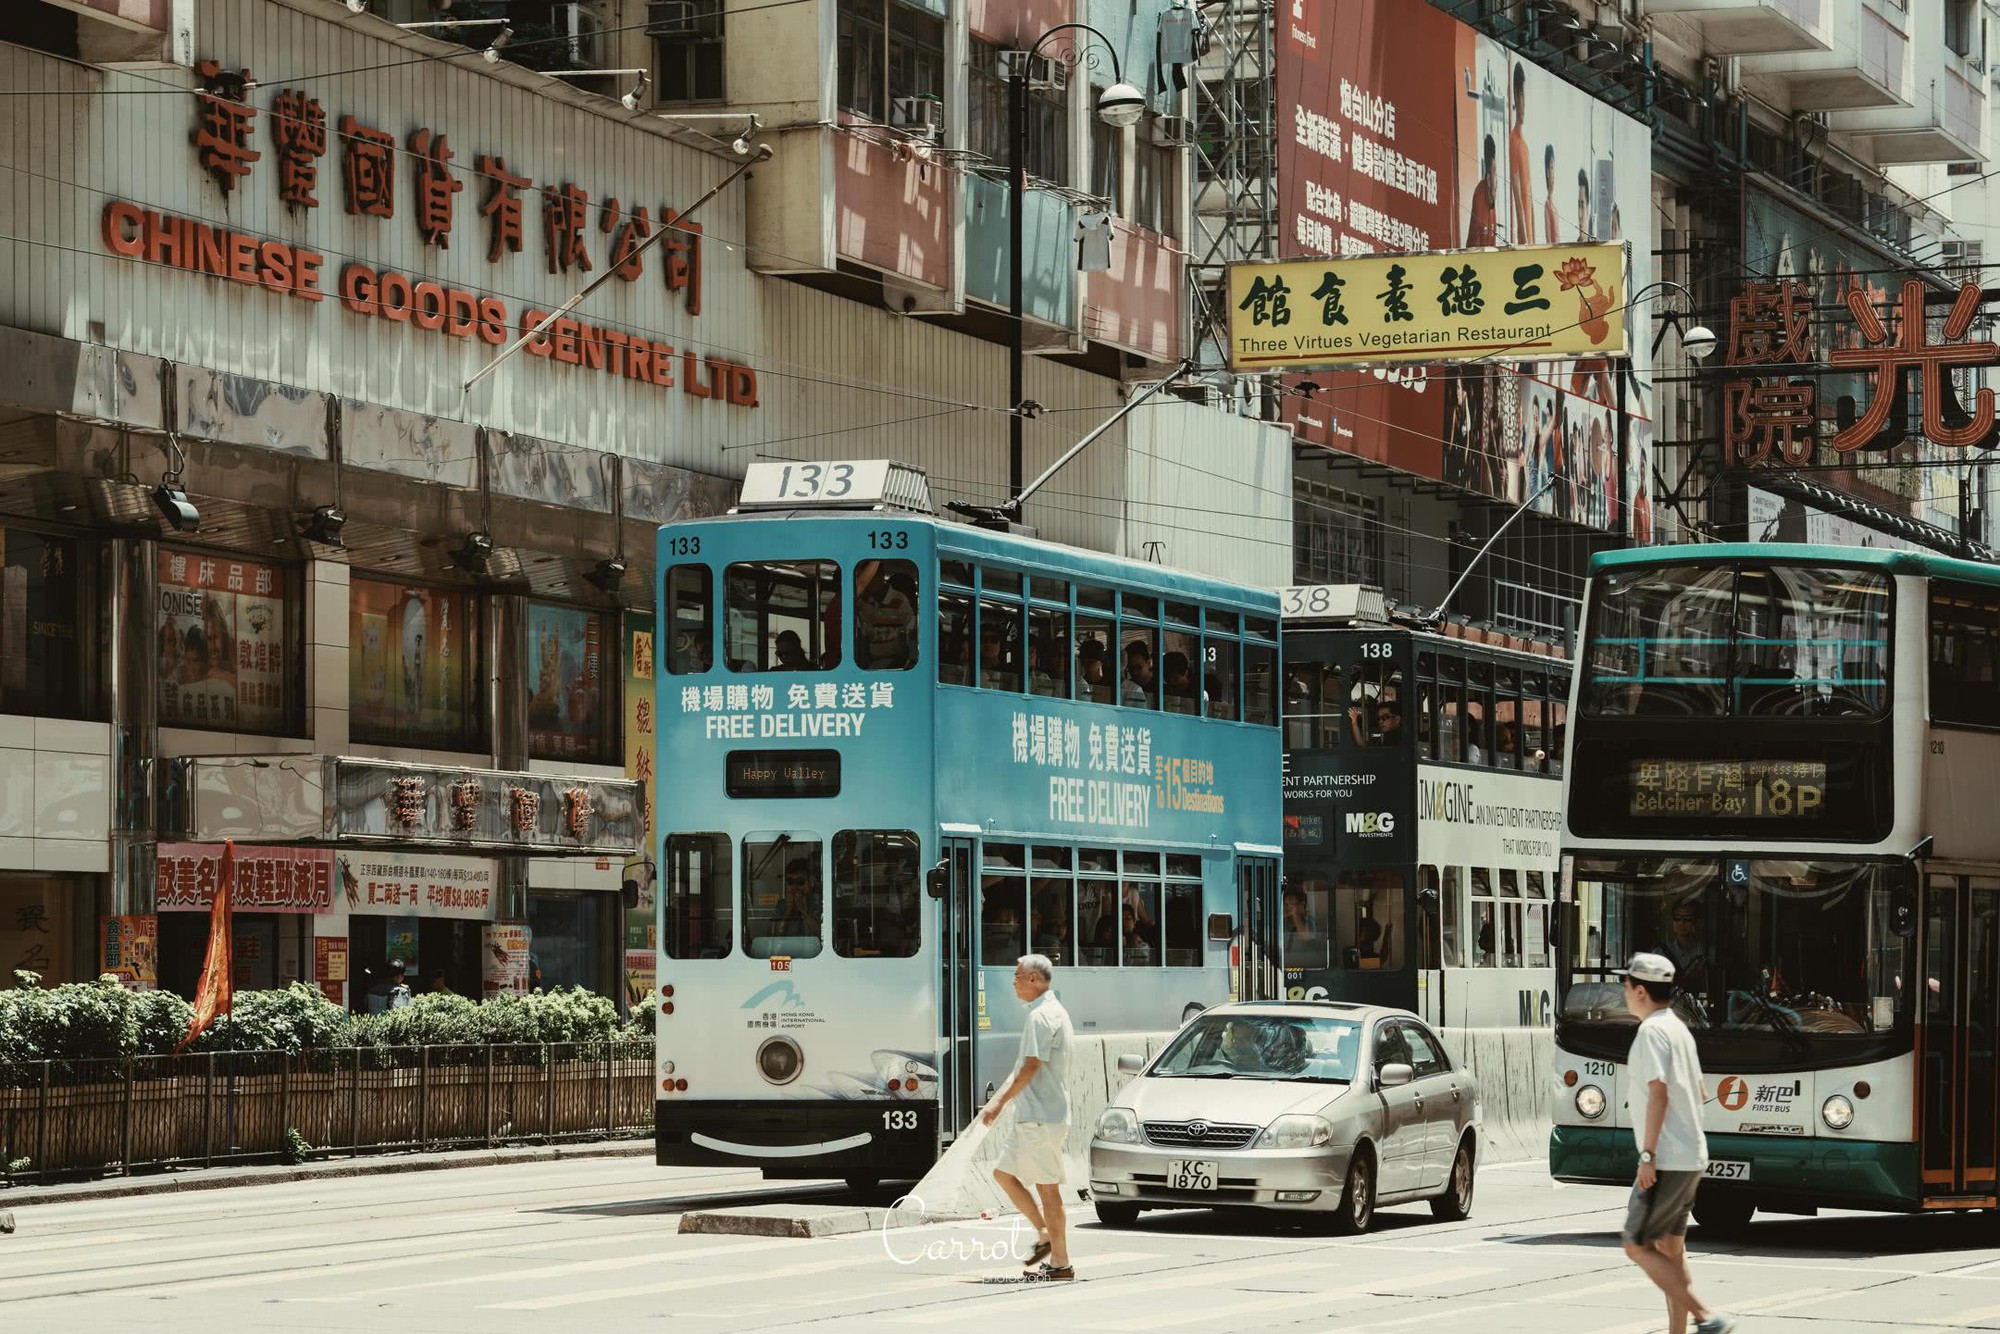 Bộ ảnh: Ngắm nhìn vẻ đẹp hoài cổ của những chiếc xe điện trăm năm tuổi của Hongkong - Ảnh 8.